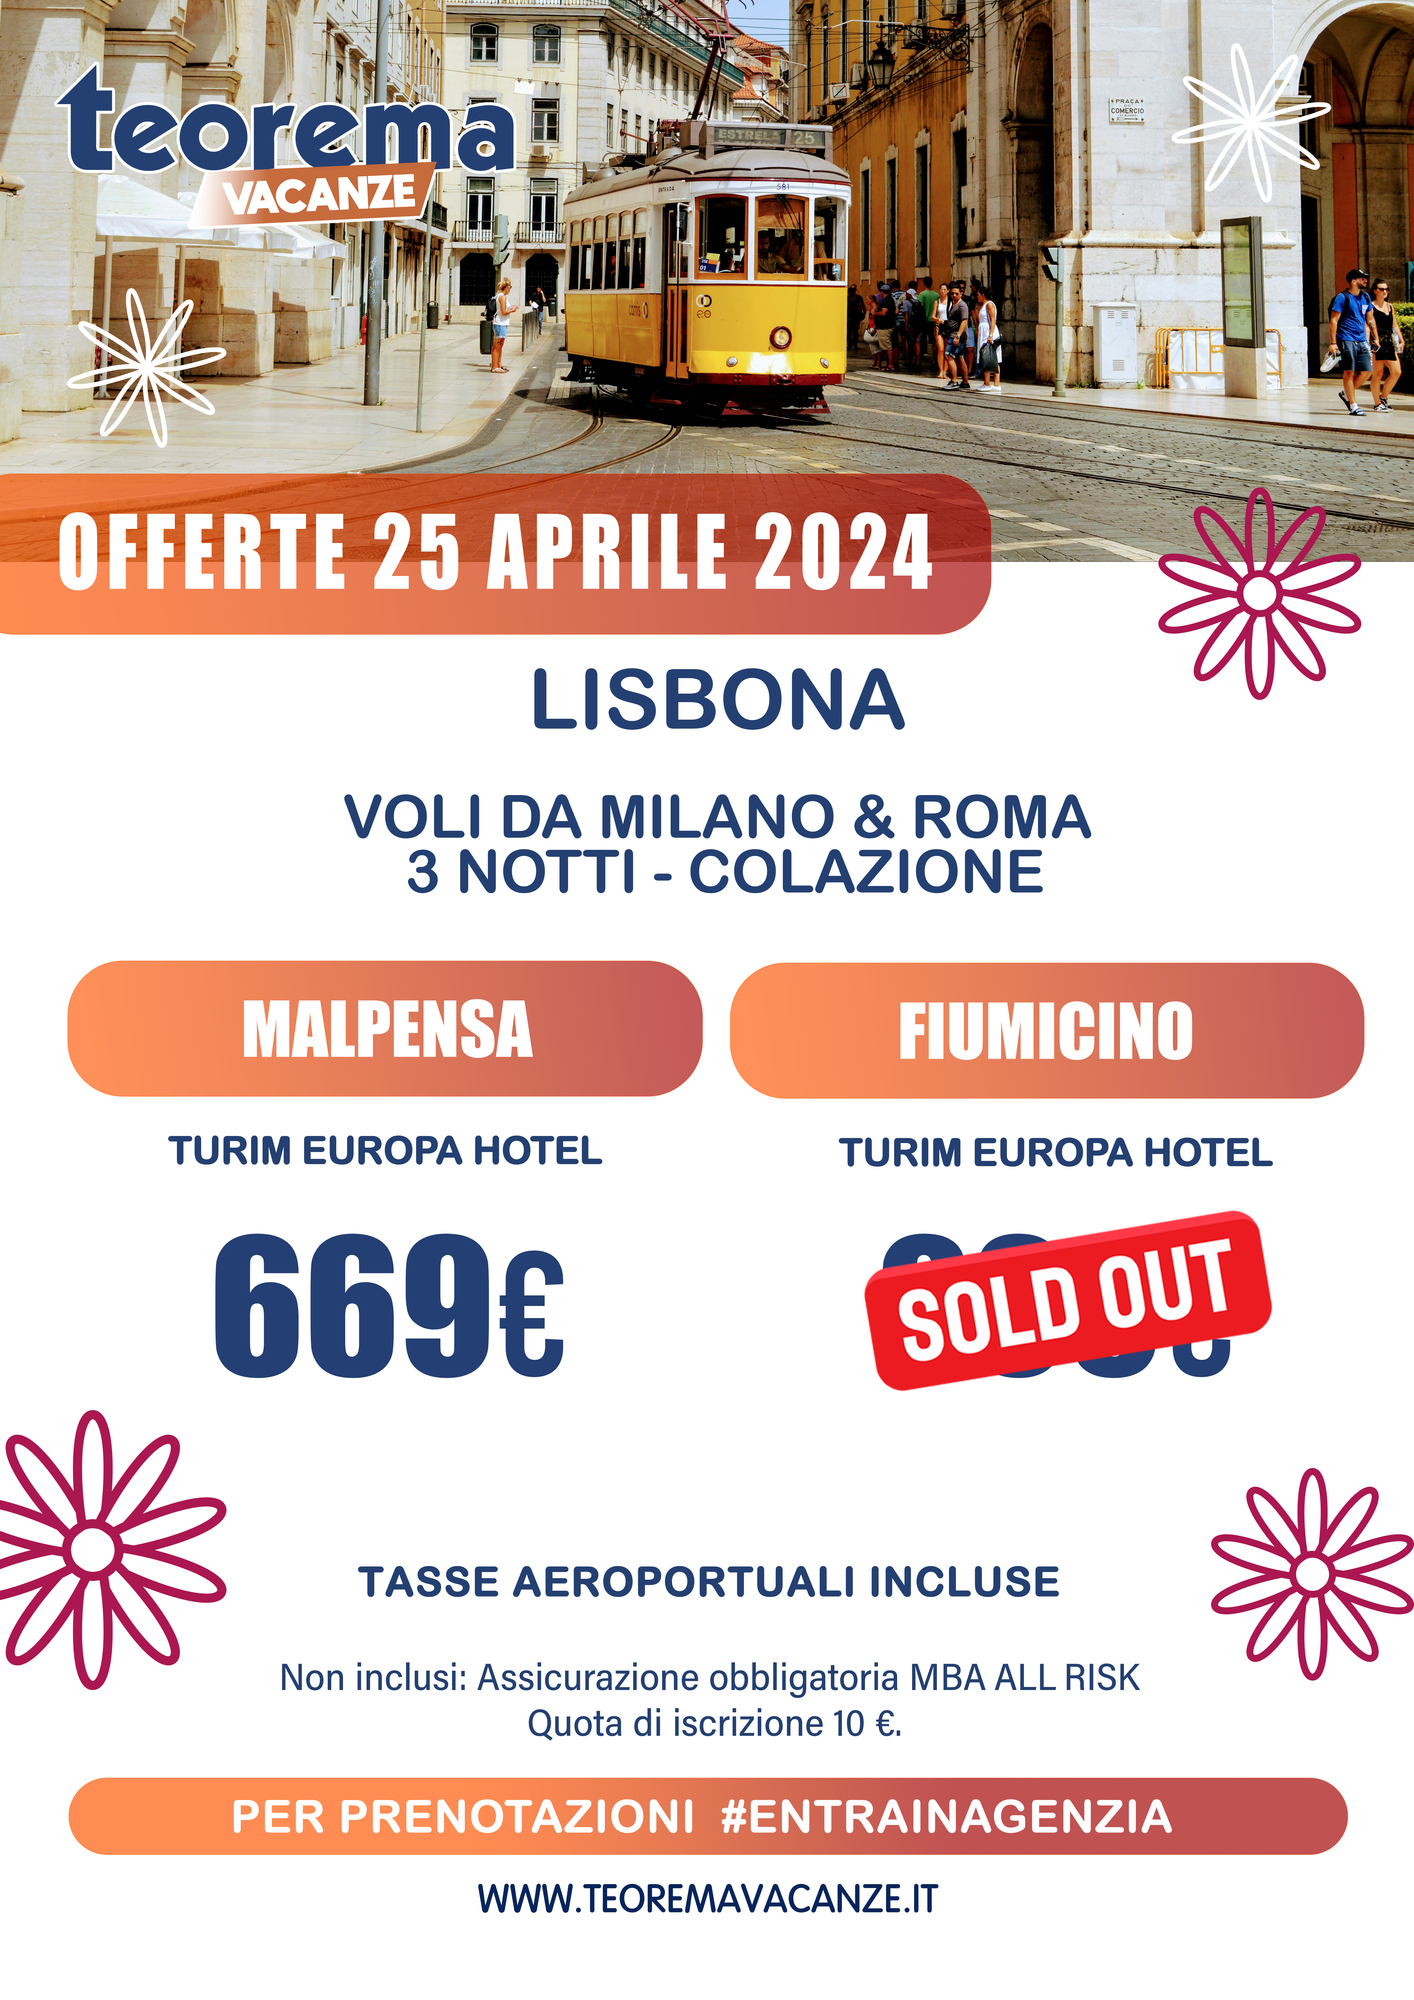 25 APRILE 2024 - LISBONA DA MILANO&ROMA